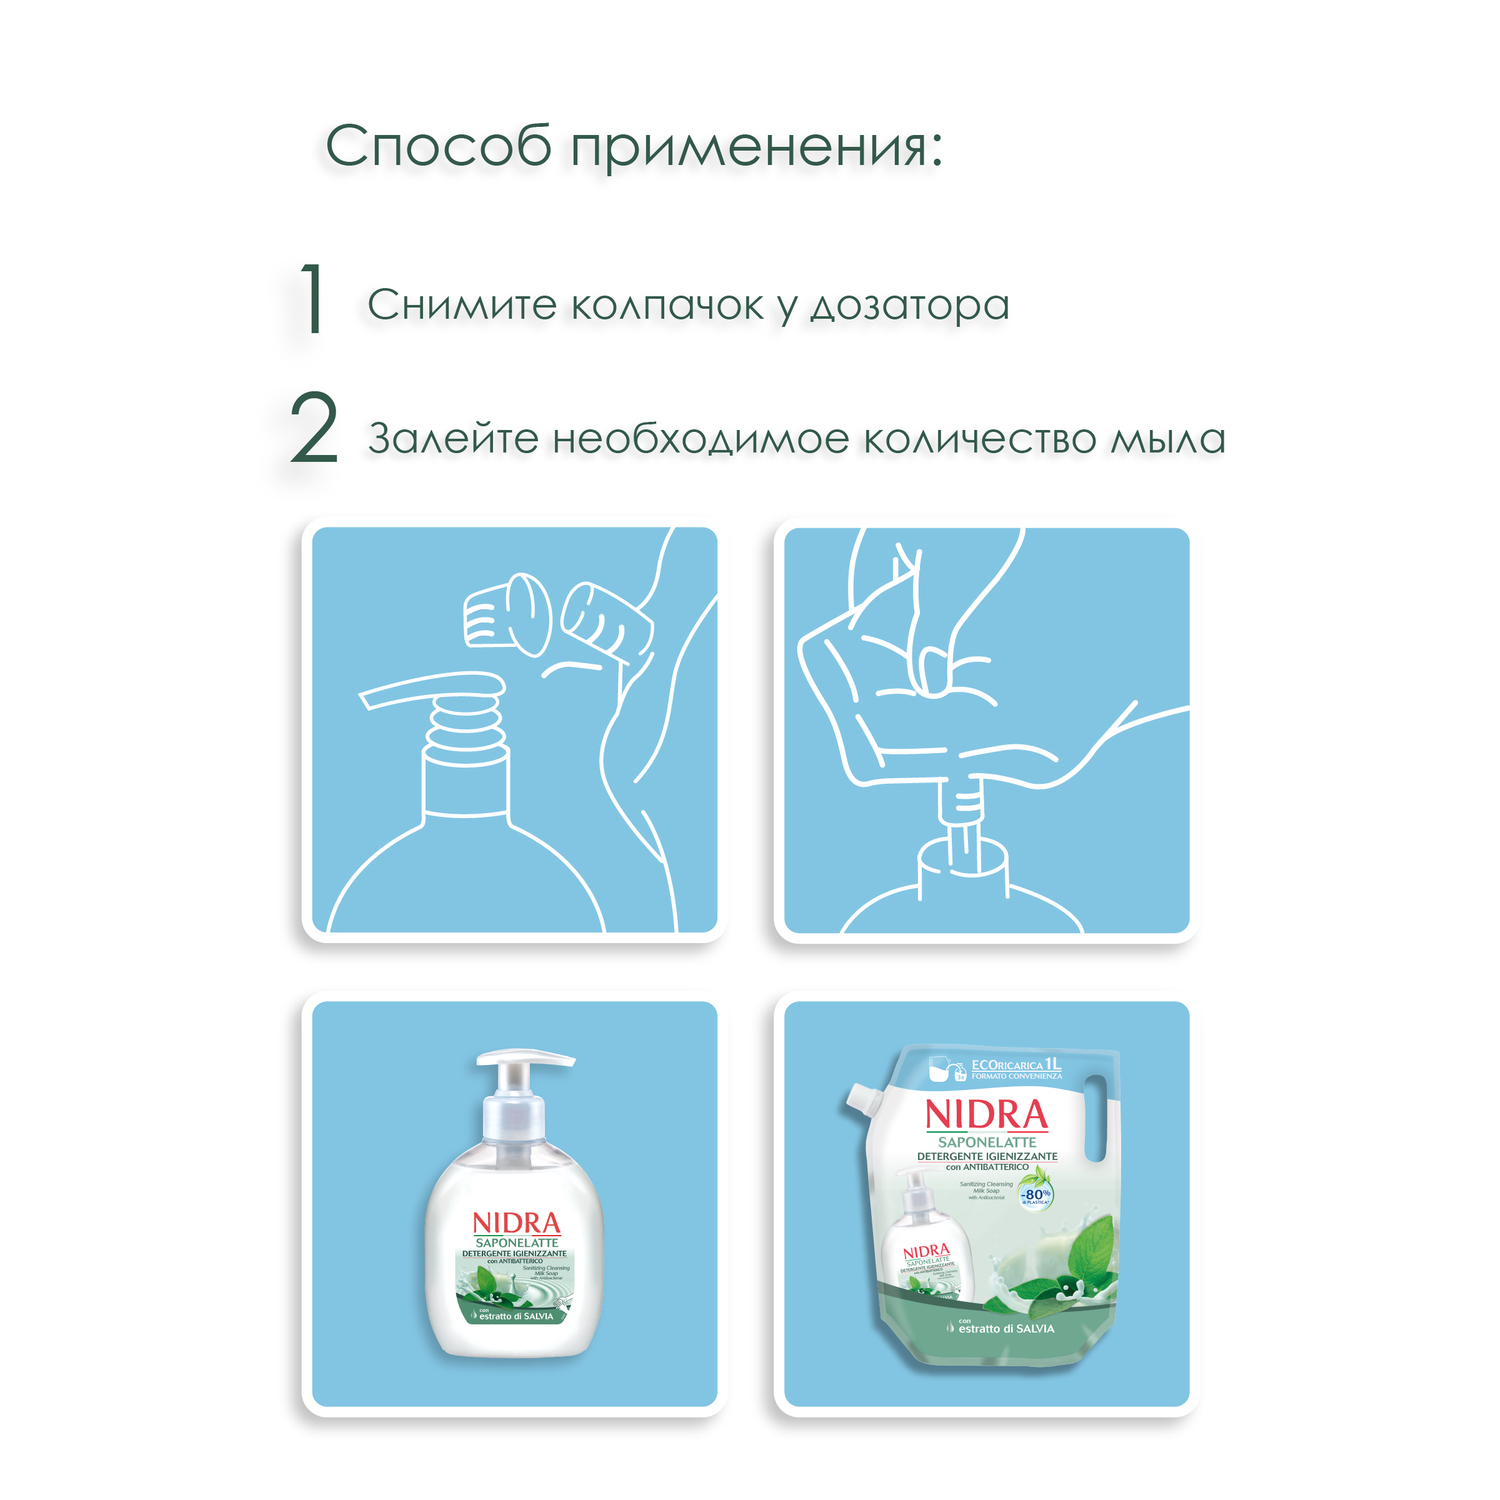 Жидкое мыло-молочко Nidra очищающее Антибактериальное 1000 мл - фото 5